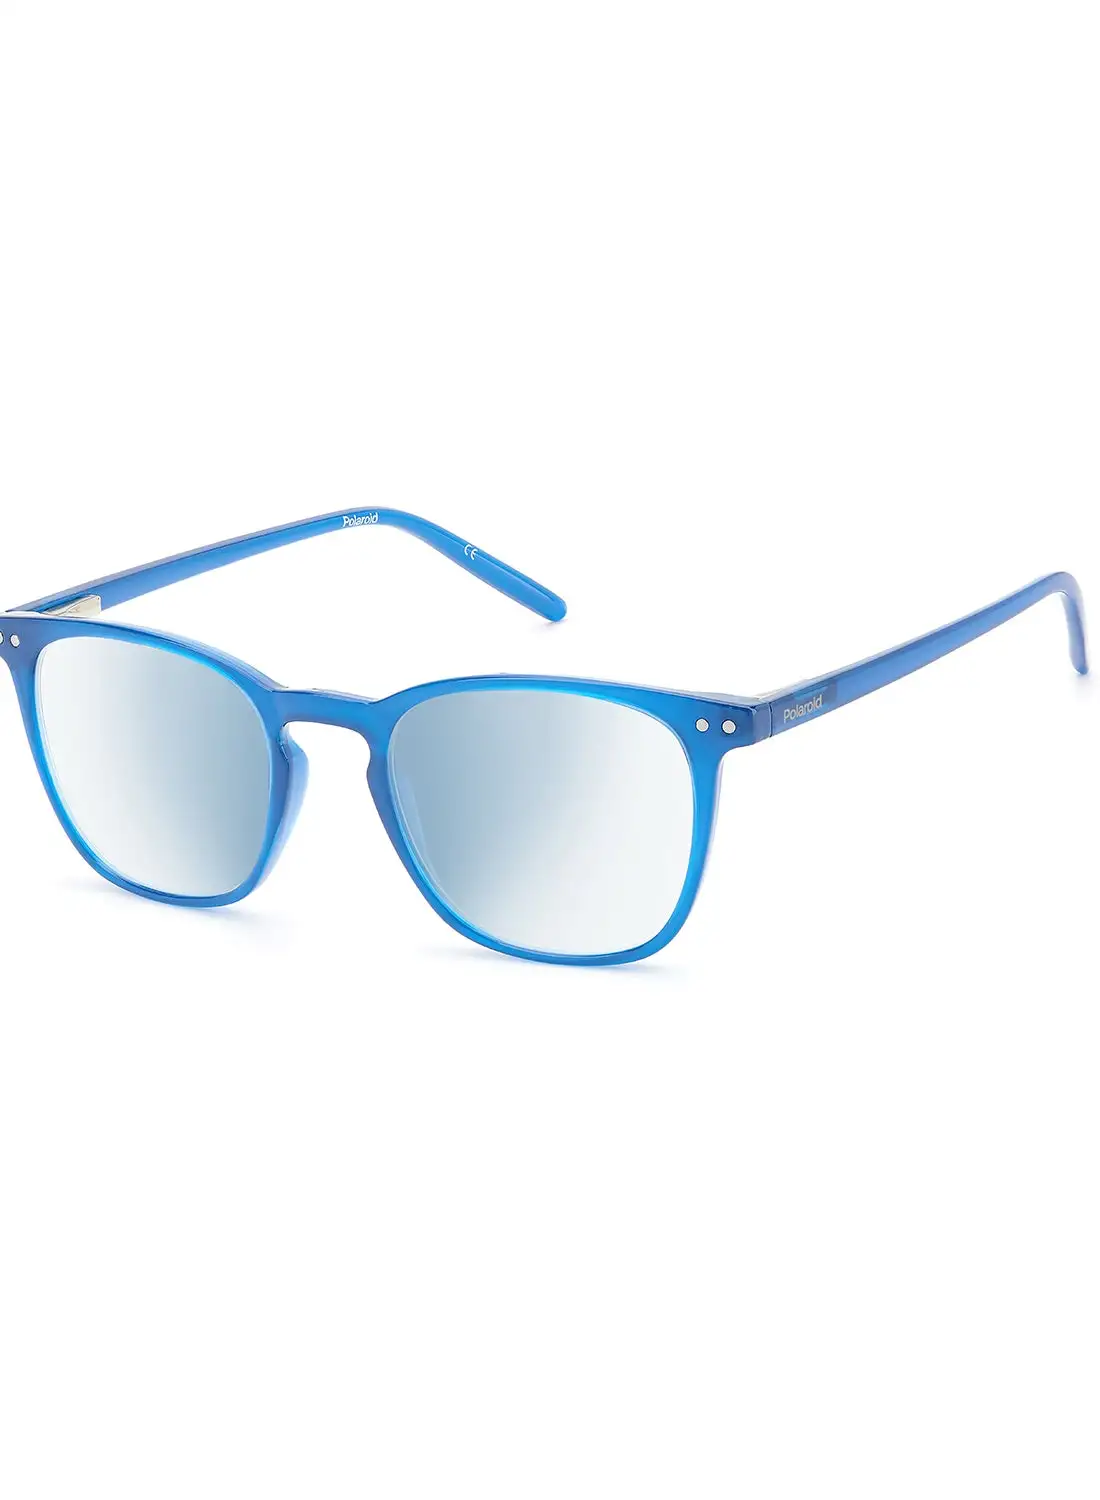 نظارات القراءة بولارويد للجنسين - Pld 0029/R/Bb Blue Azur50 - مقاس العدسة: 50 ملم